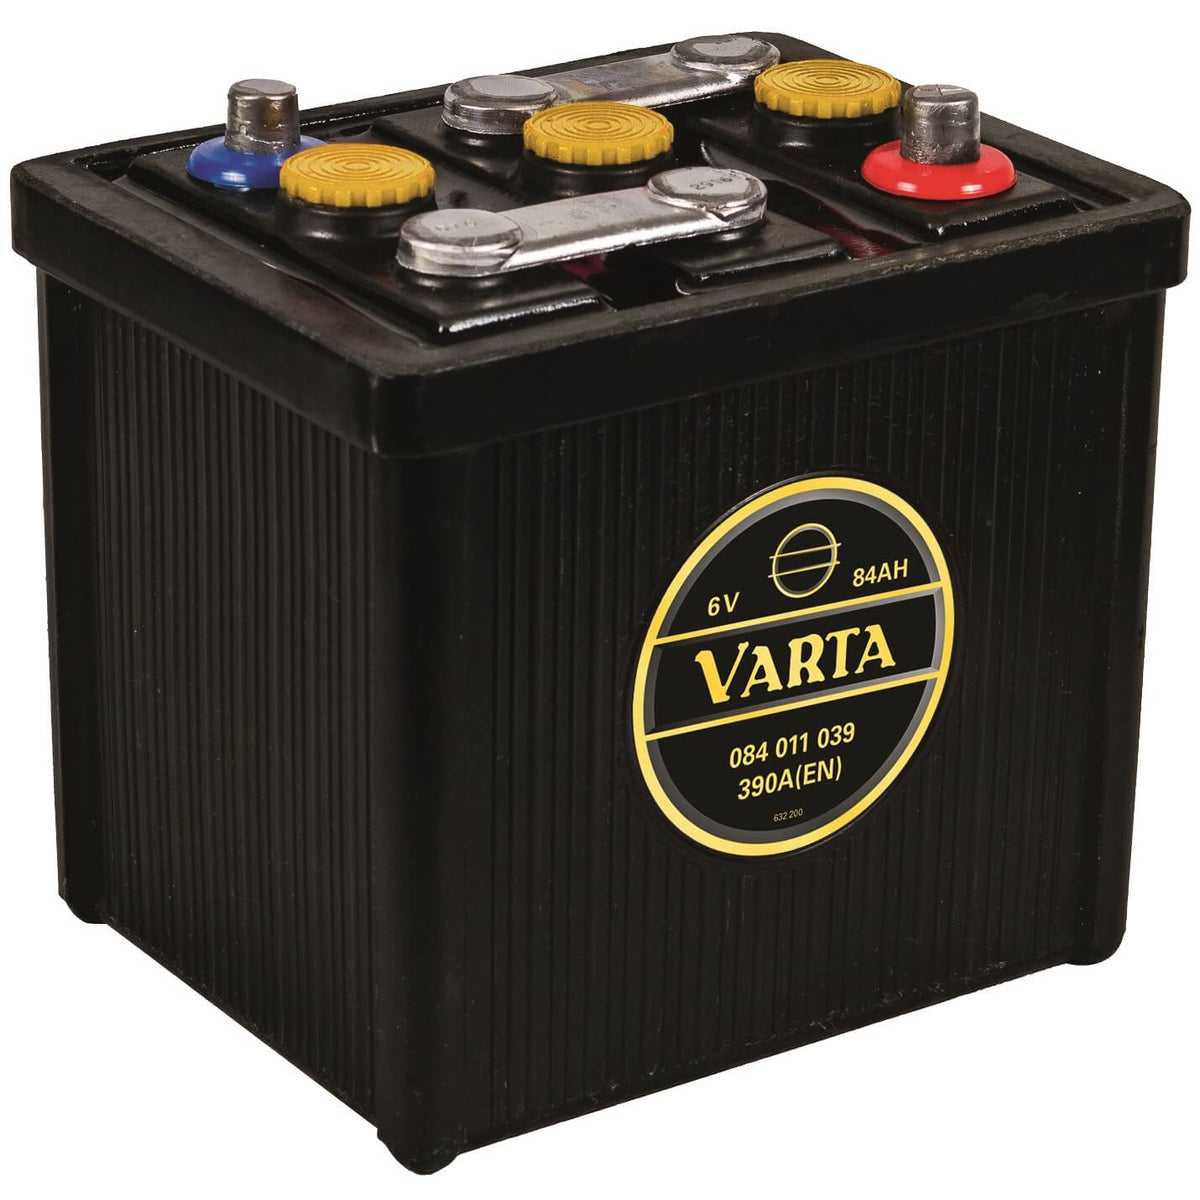 Varta Classic Oldtimer 08411 6V 84Ah 390A/EN